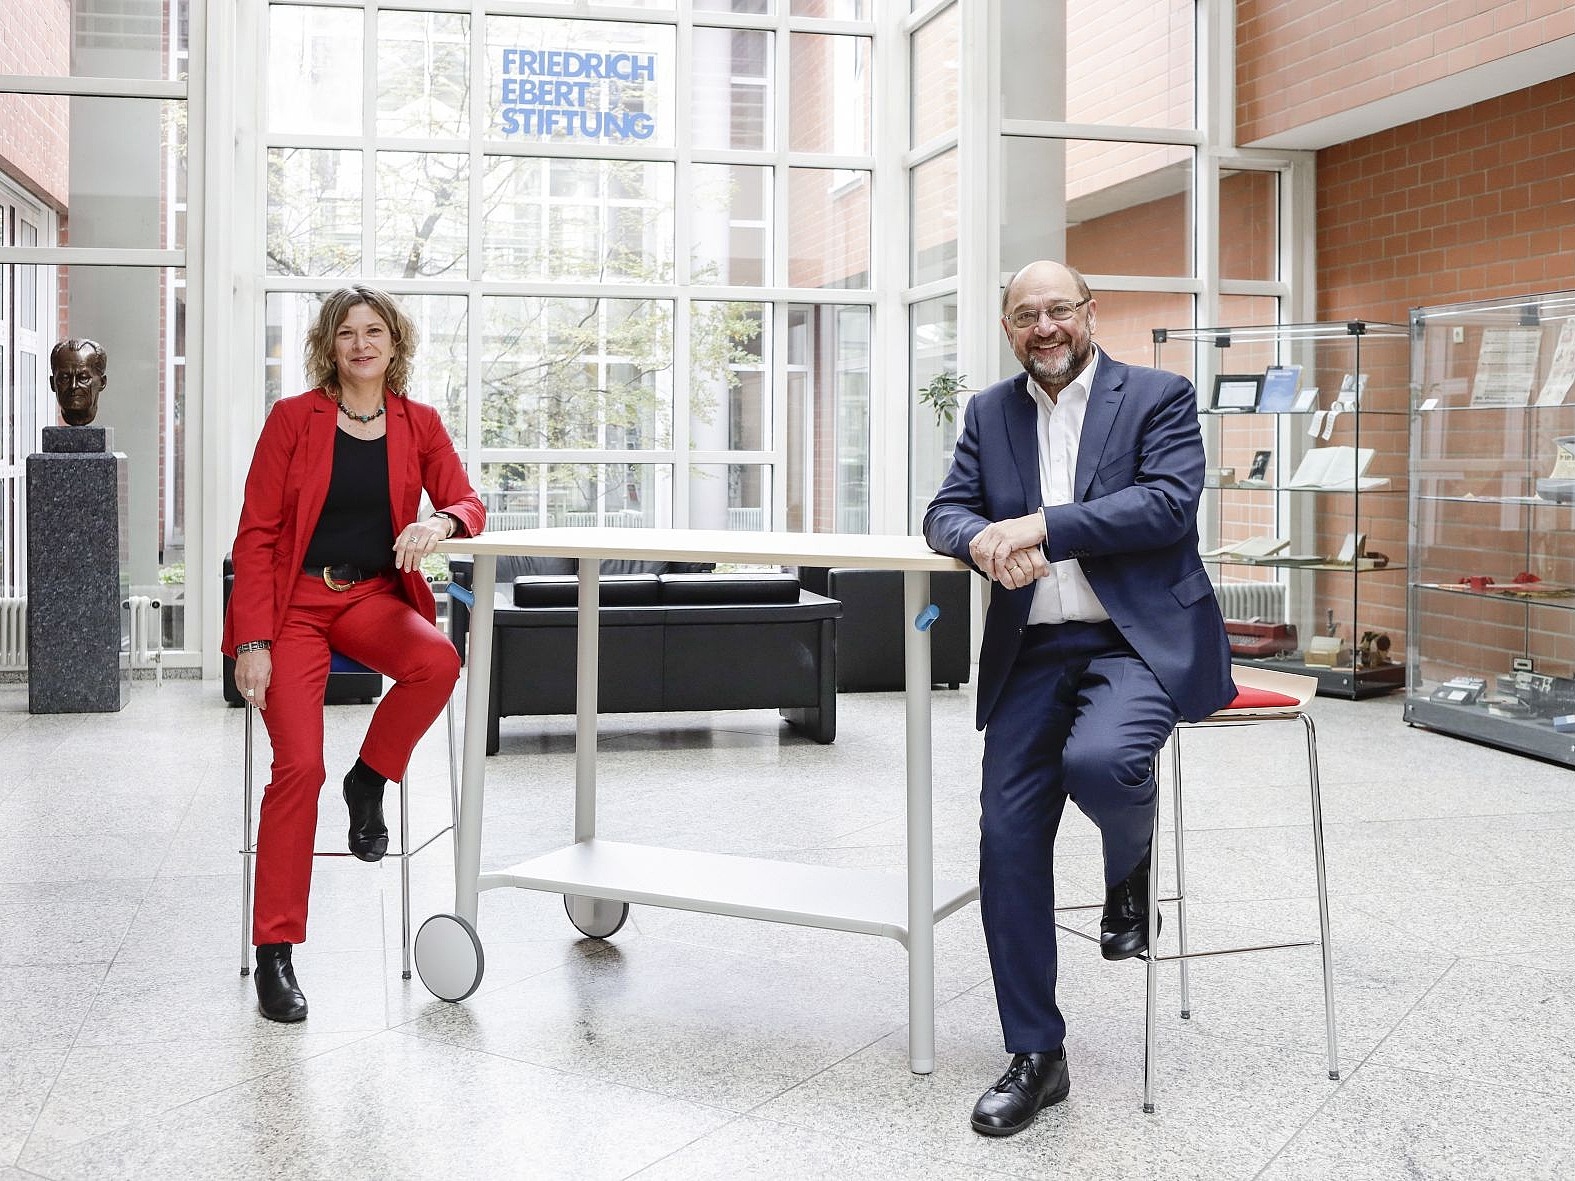 Masrtin Schulz und Sabine Fandrych sitzen im Foyer der Friedrich-Ebert-Stiftung in Bonn